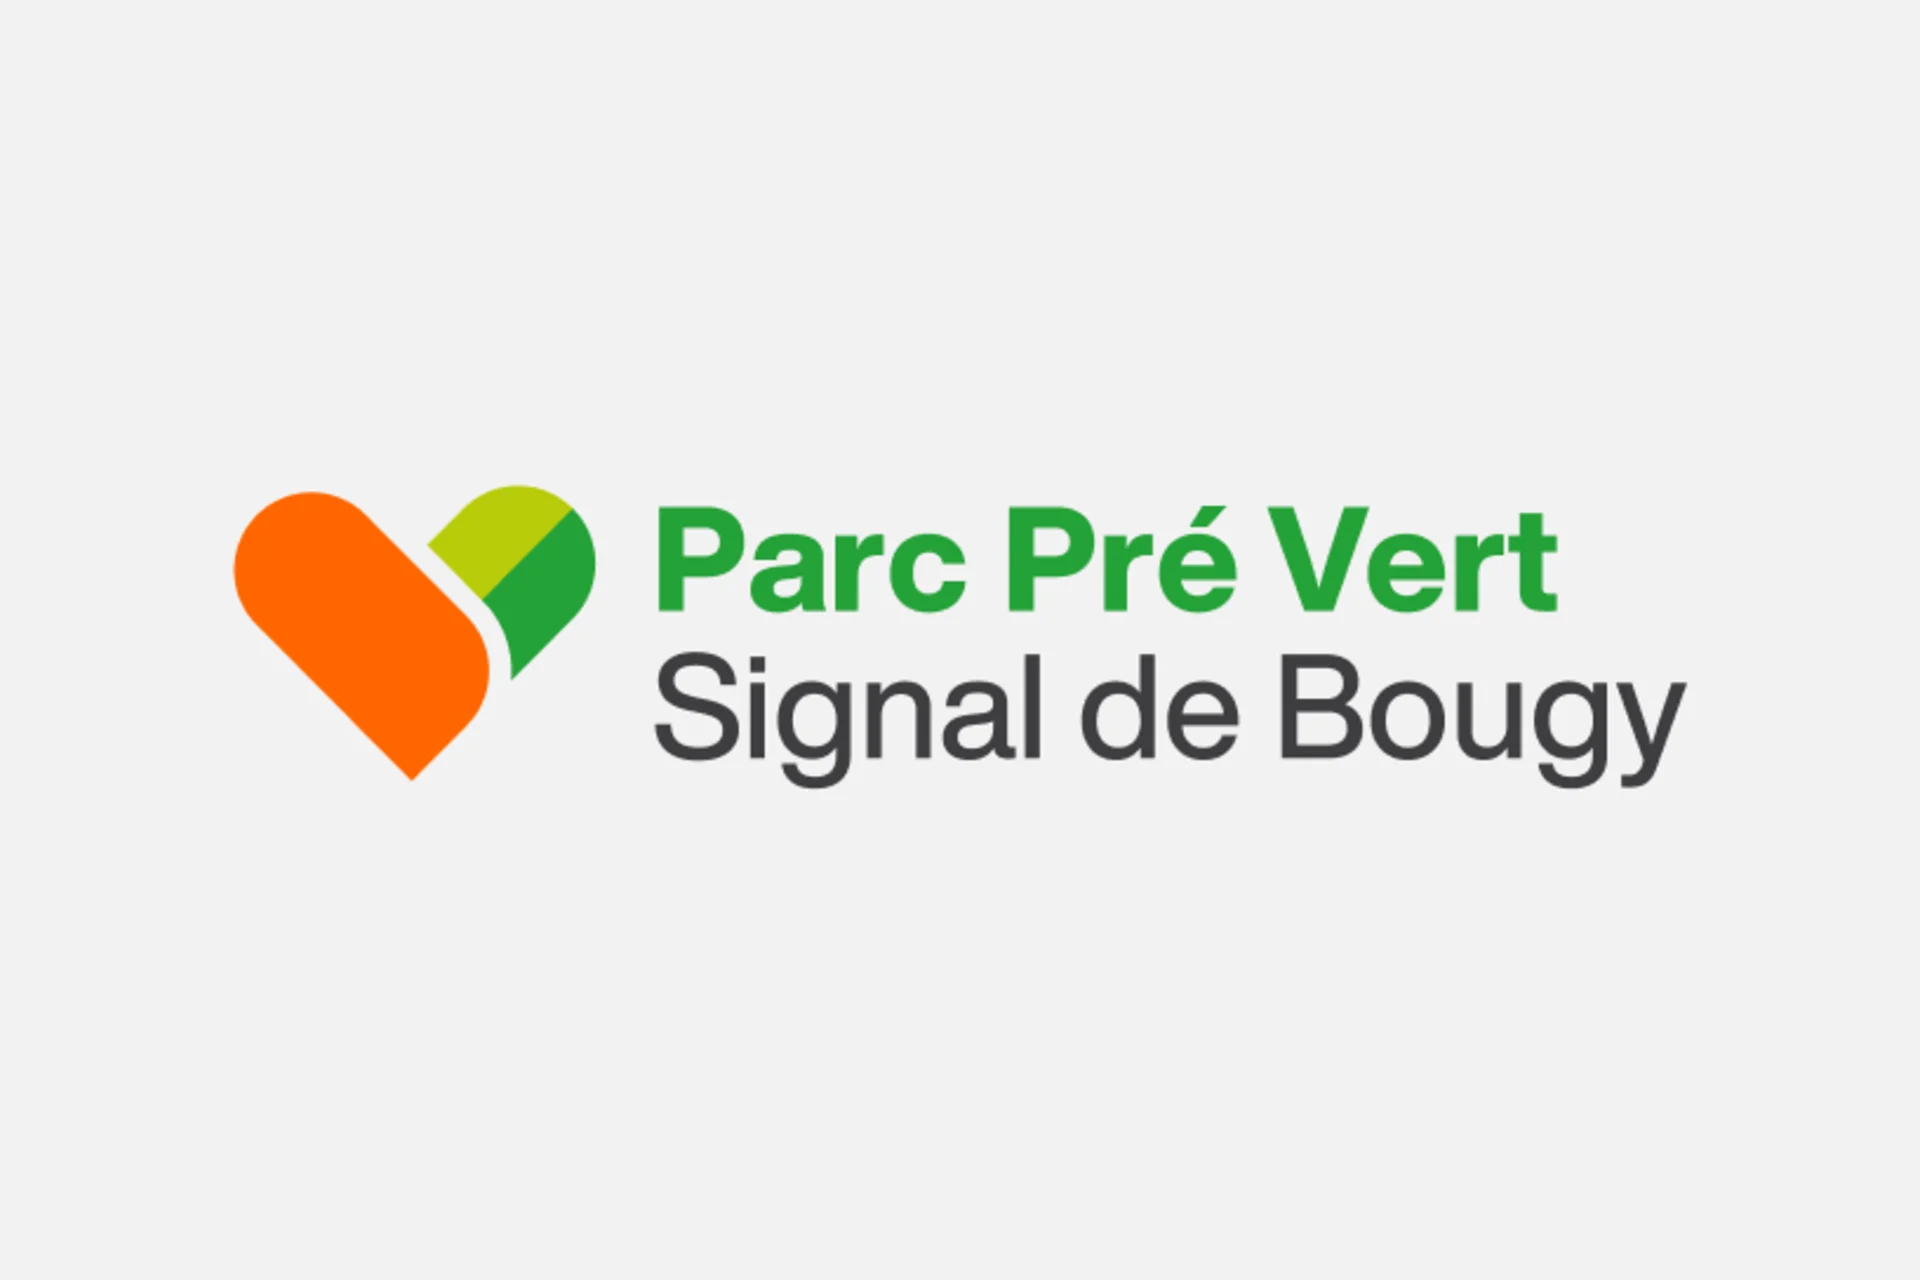 Parc Pré Vert logo